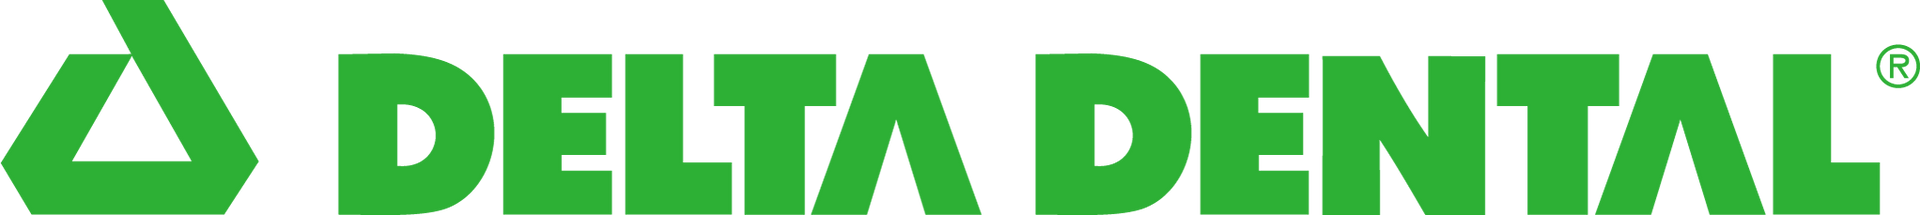 deltal dental logo